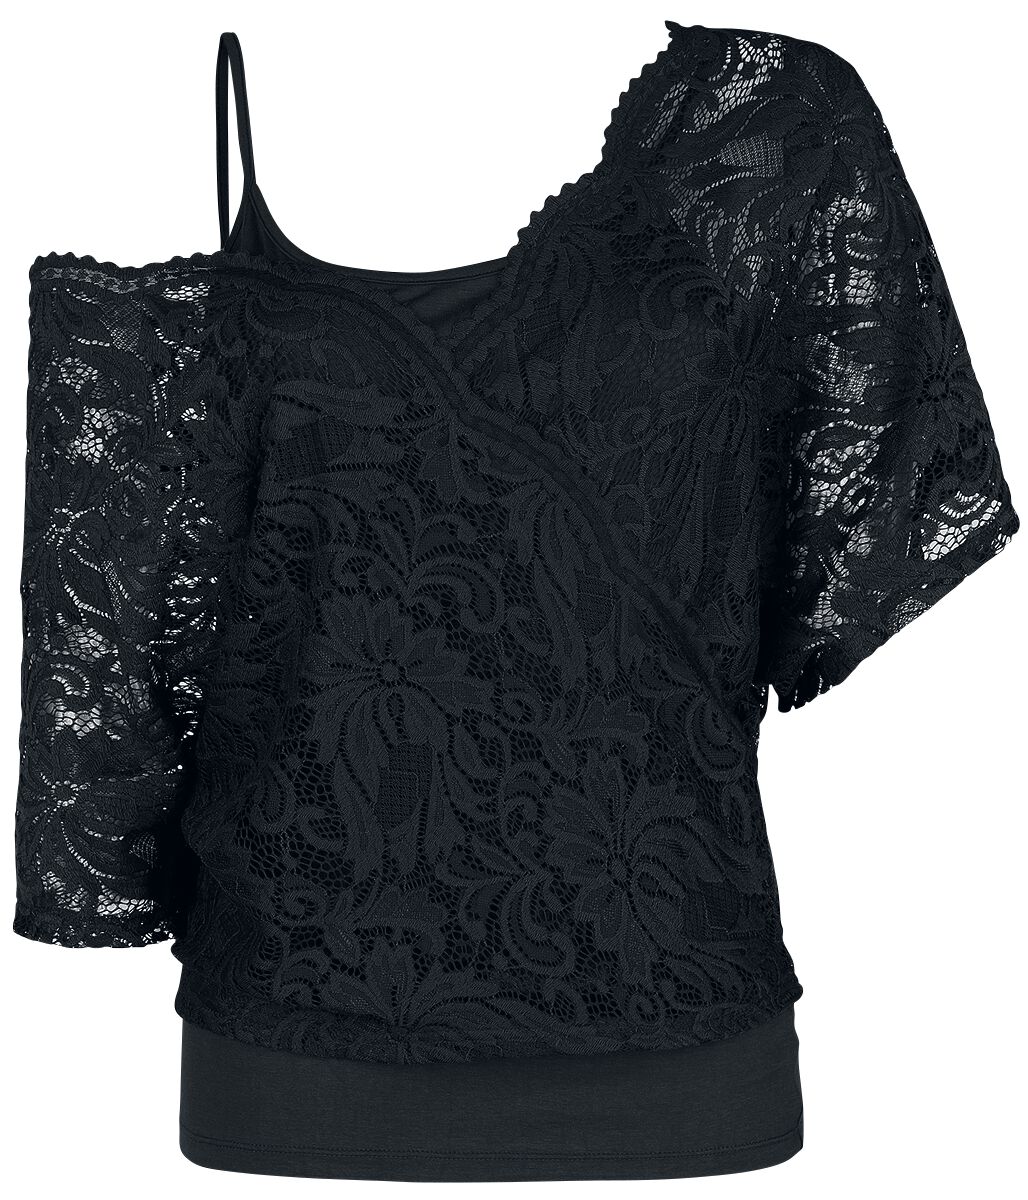 Black Premium by EMP T-Shirt - When The Heart Rules The Mind - S bis 4XL - für Damen - Größe XL - schwarz